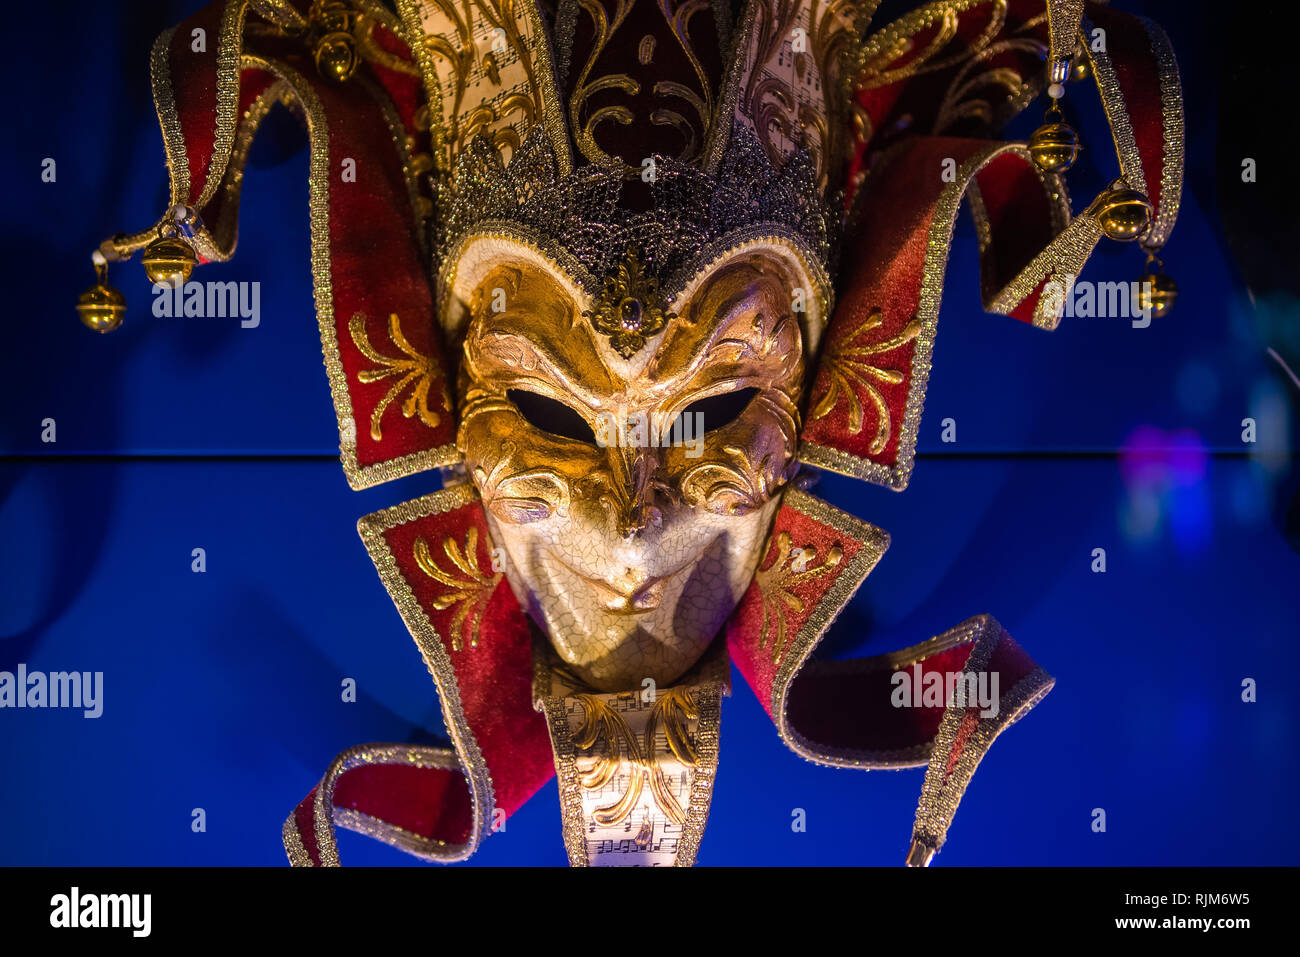 Venetian mask for carnival in Venice, Italy. Venice carnival masks at night Stock Photo